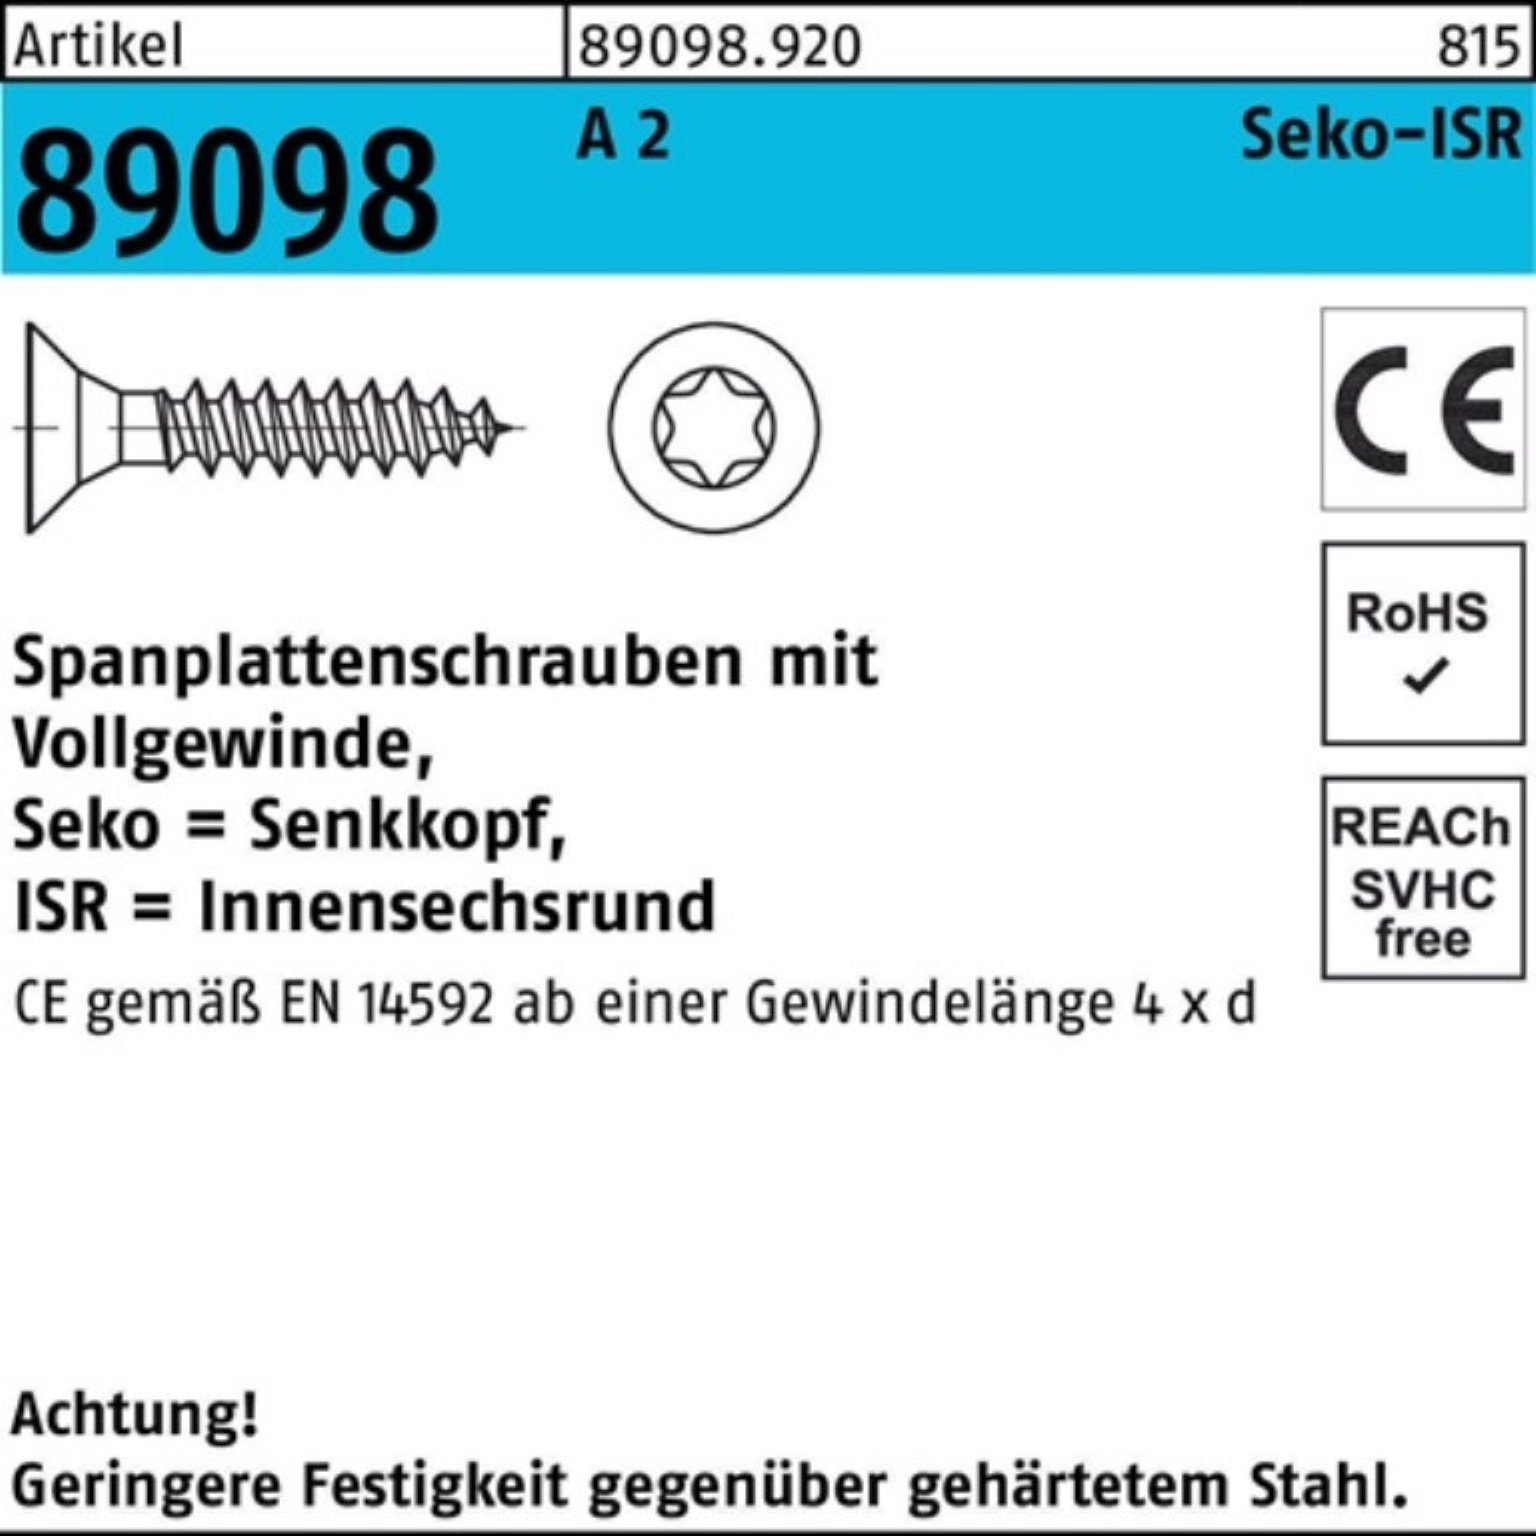 Reyher Spanplattenschraube 1000er Pack Spanplattenschraube R 89098 SEKO ISR VG 3x 20-T10 A 2 1000